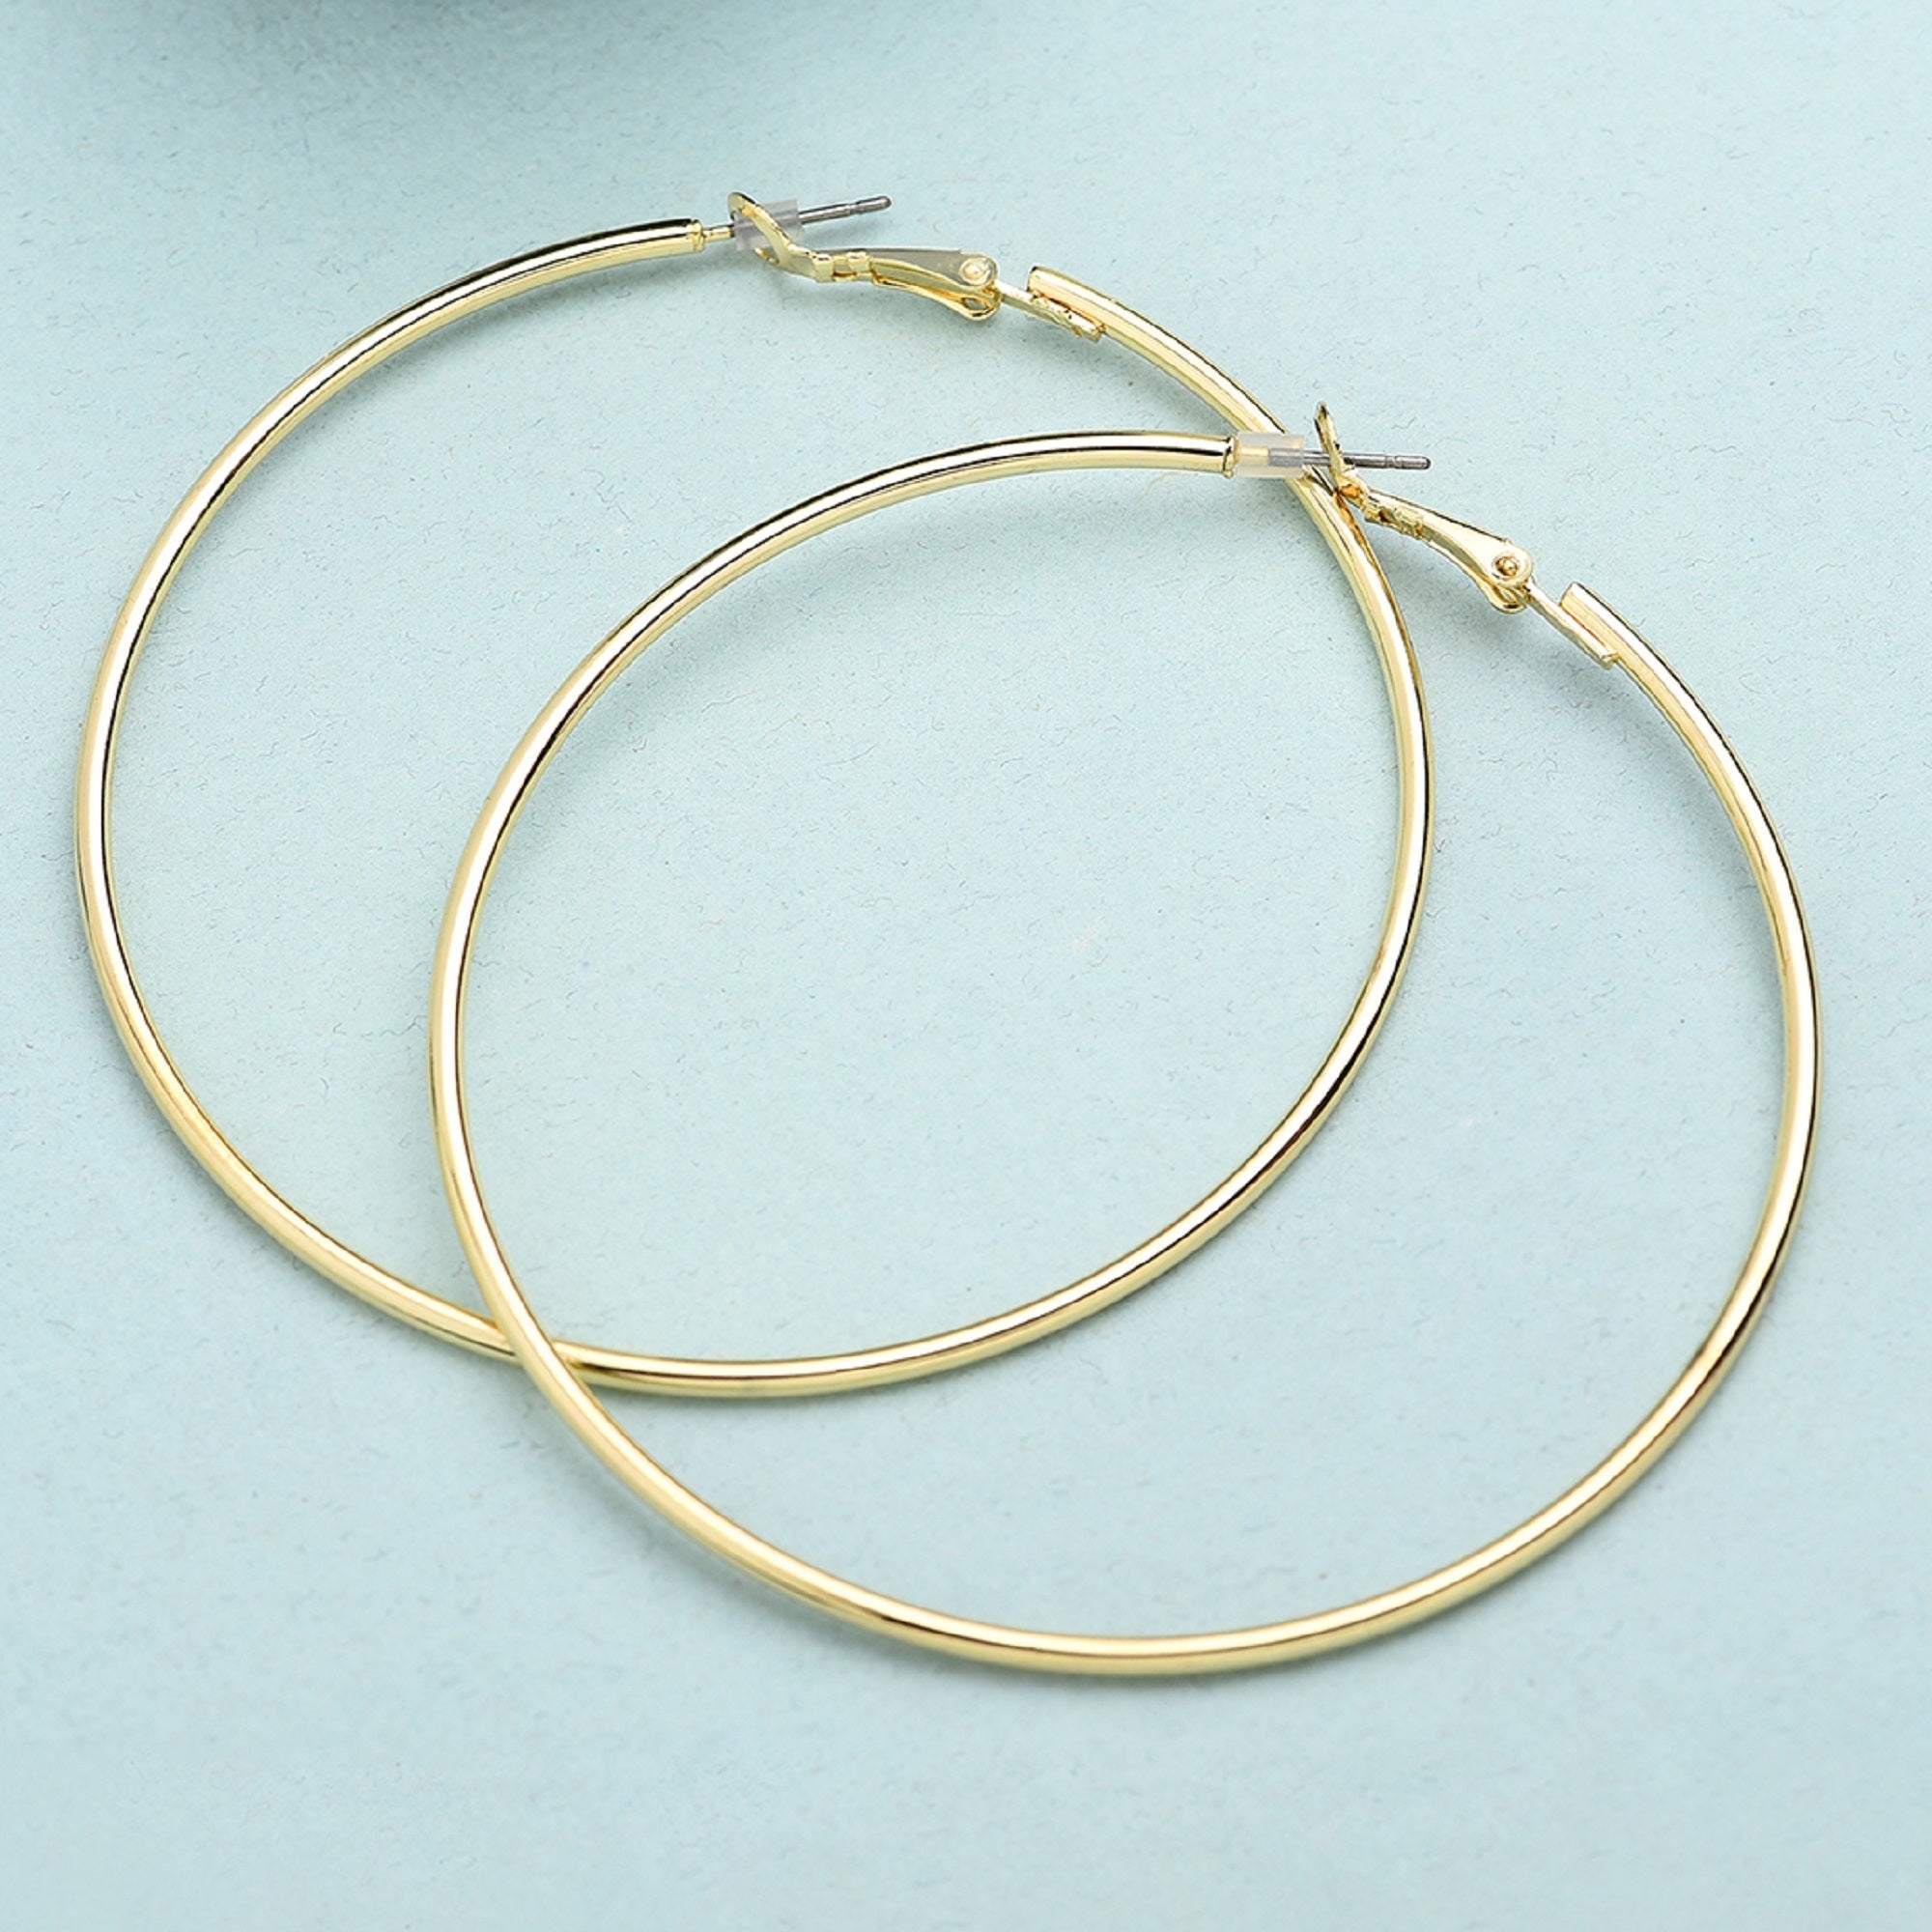 Buy Medium Simple Hoop Earrings Online - Accessorize India